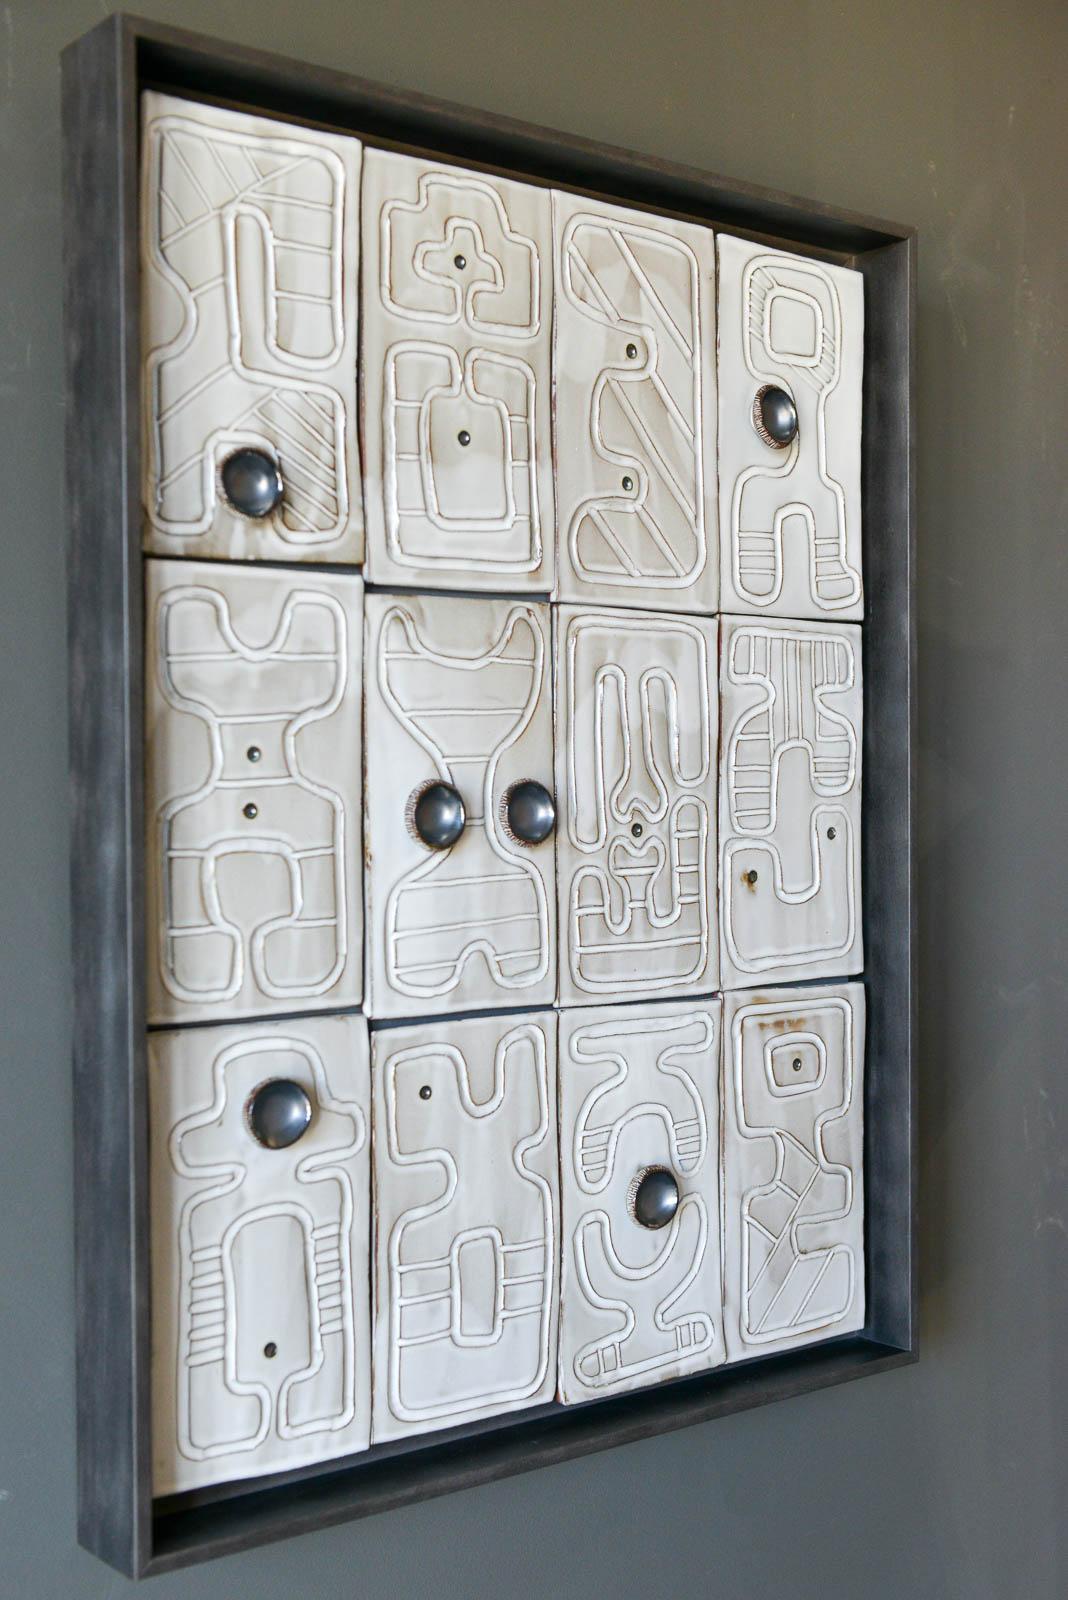 Keramik-Wandrelief der kalifornischen Künstlerin Adele Martin, 'New Alphabet-Dialog' Originelle, einzigartige Keramik-Wandrelief-Skulptur der kalifornischen Künstlerin Adele Martin. Jede Fliese ist handgefertigt und individuell gestaltet, glasiert